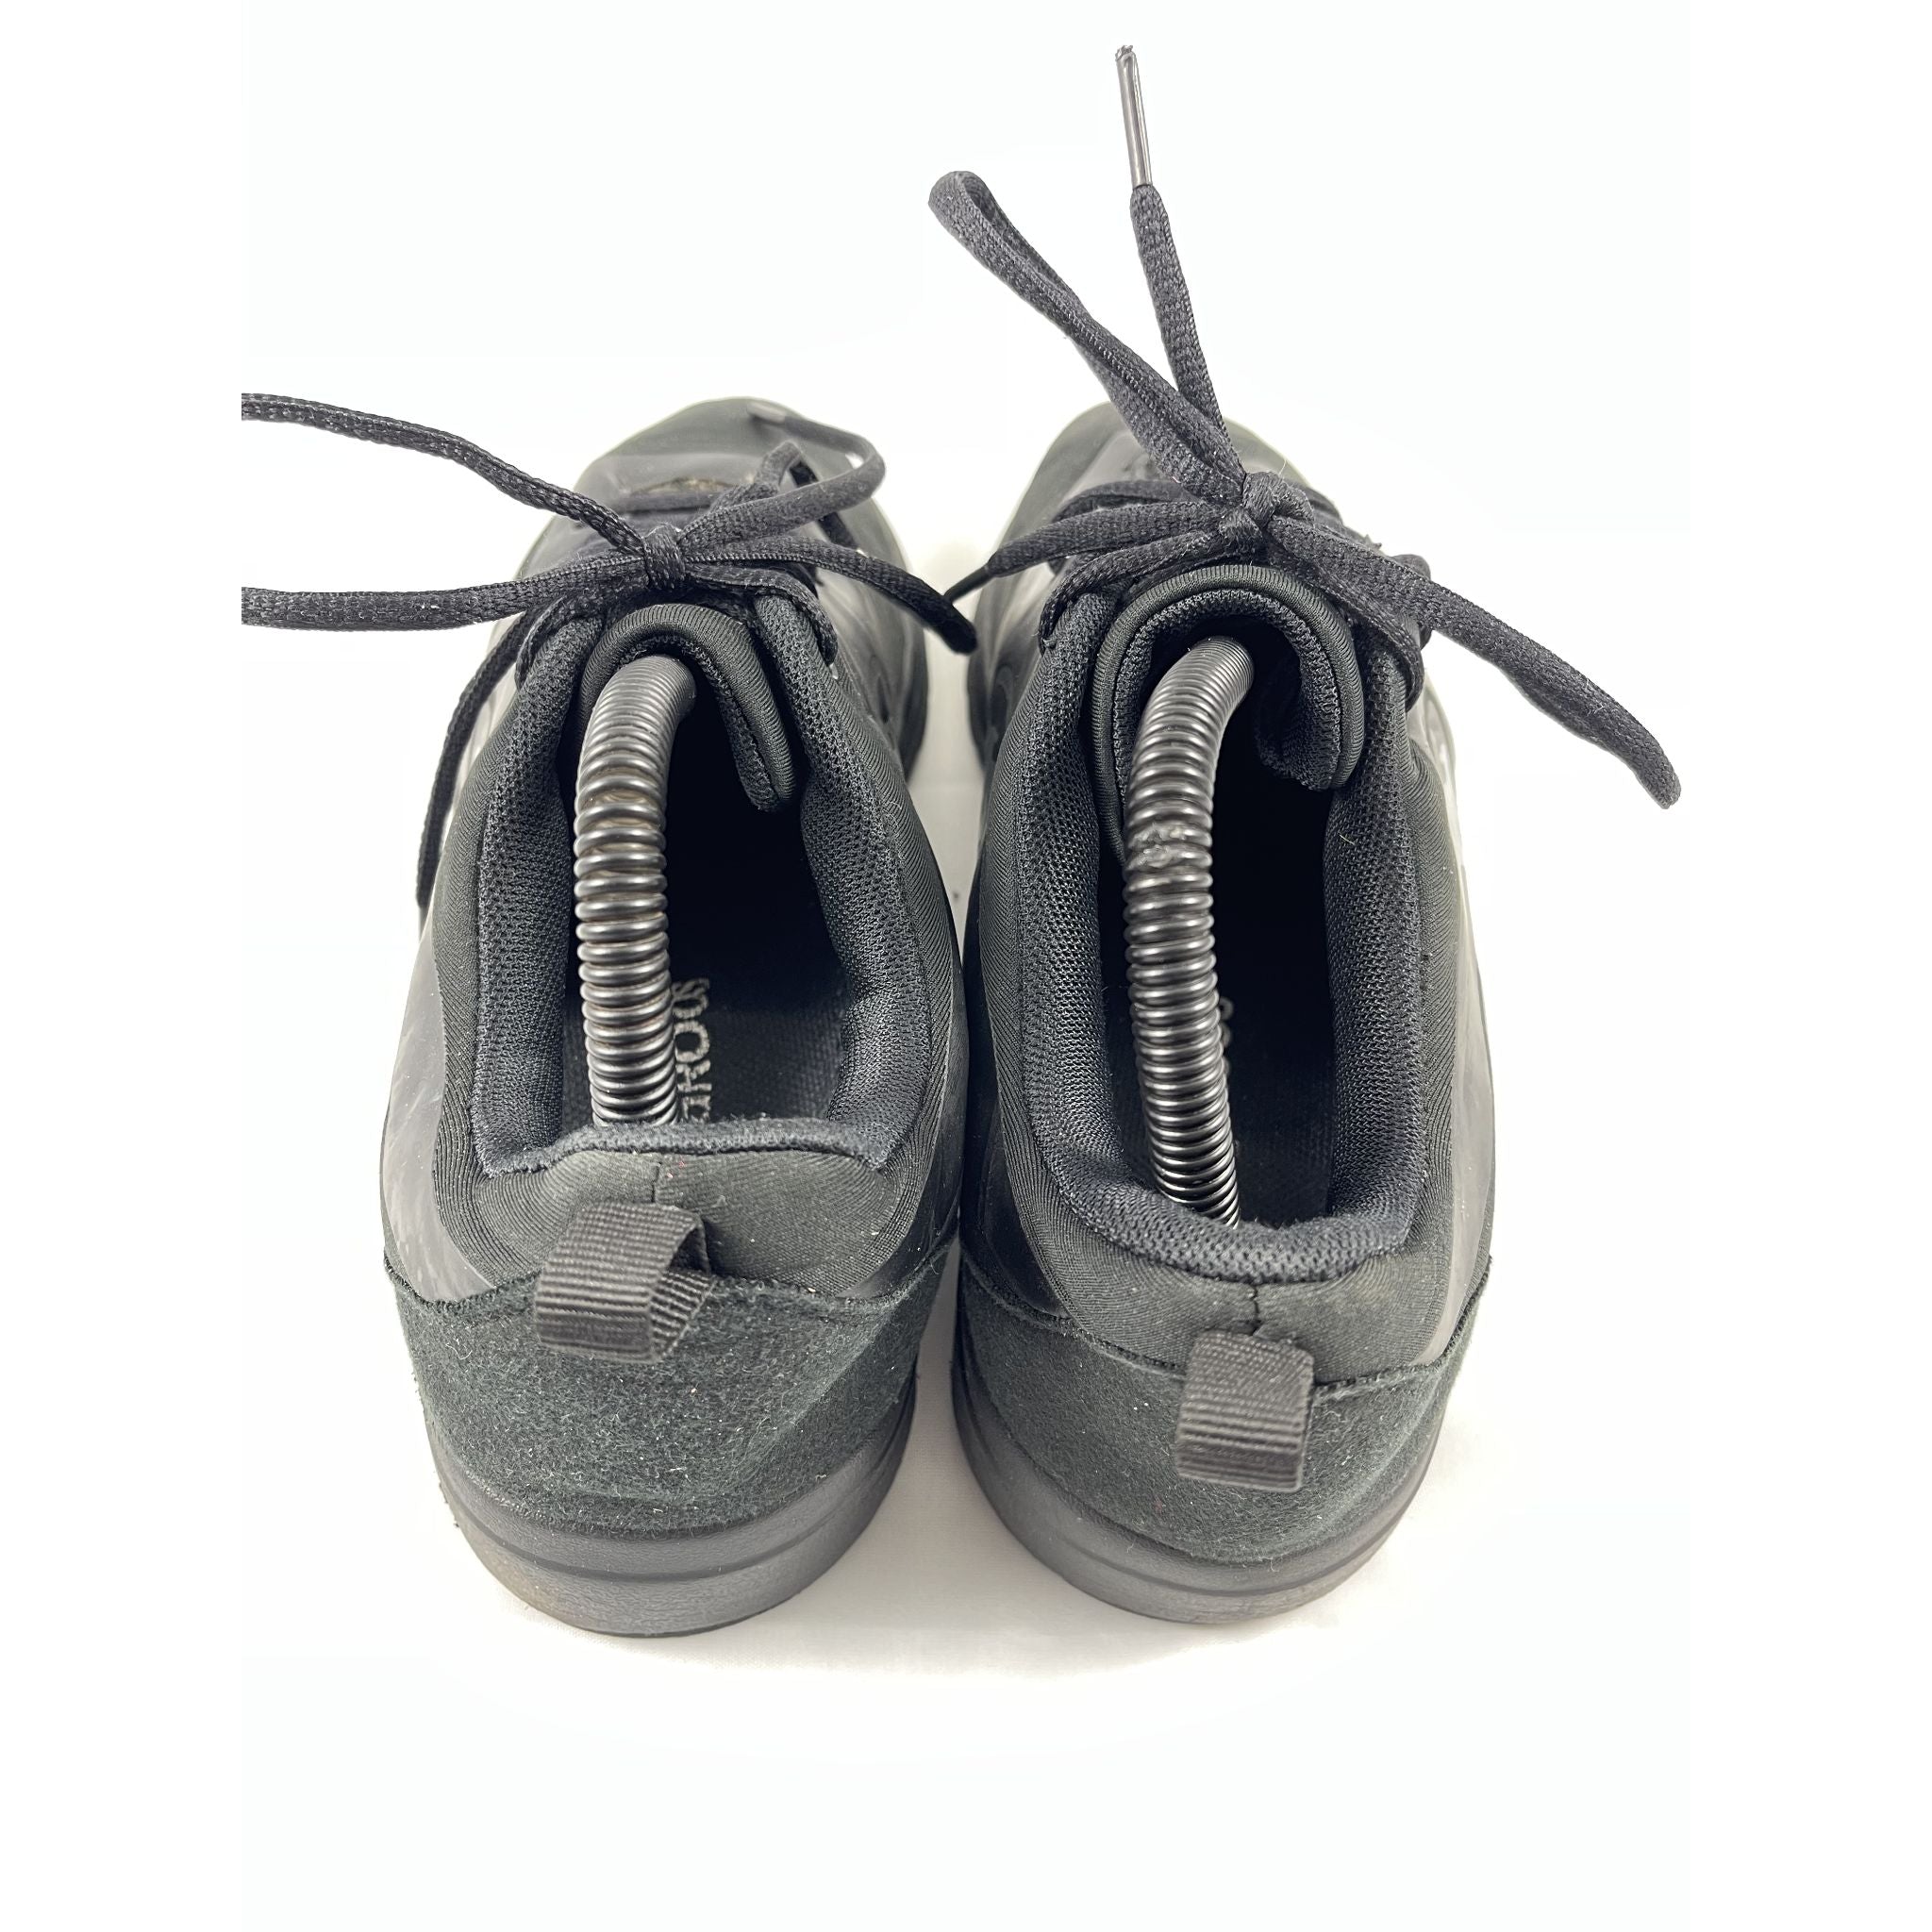 KangaRoos Black Sneakers